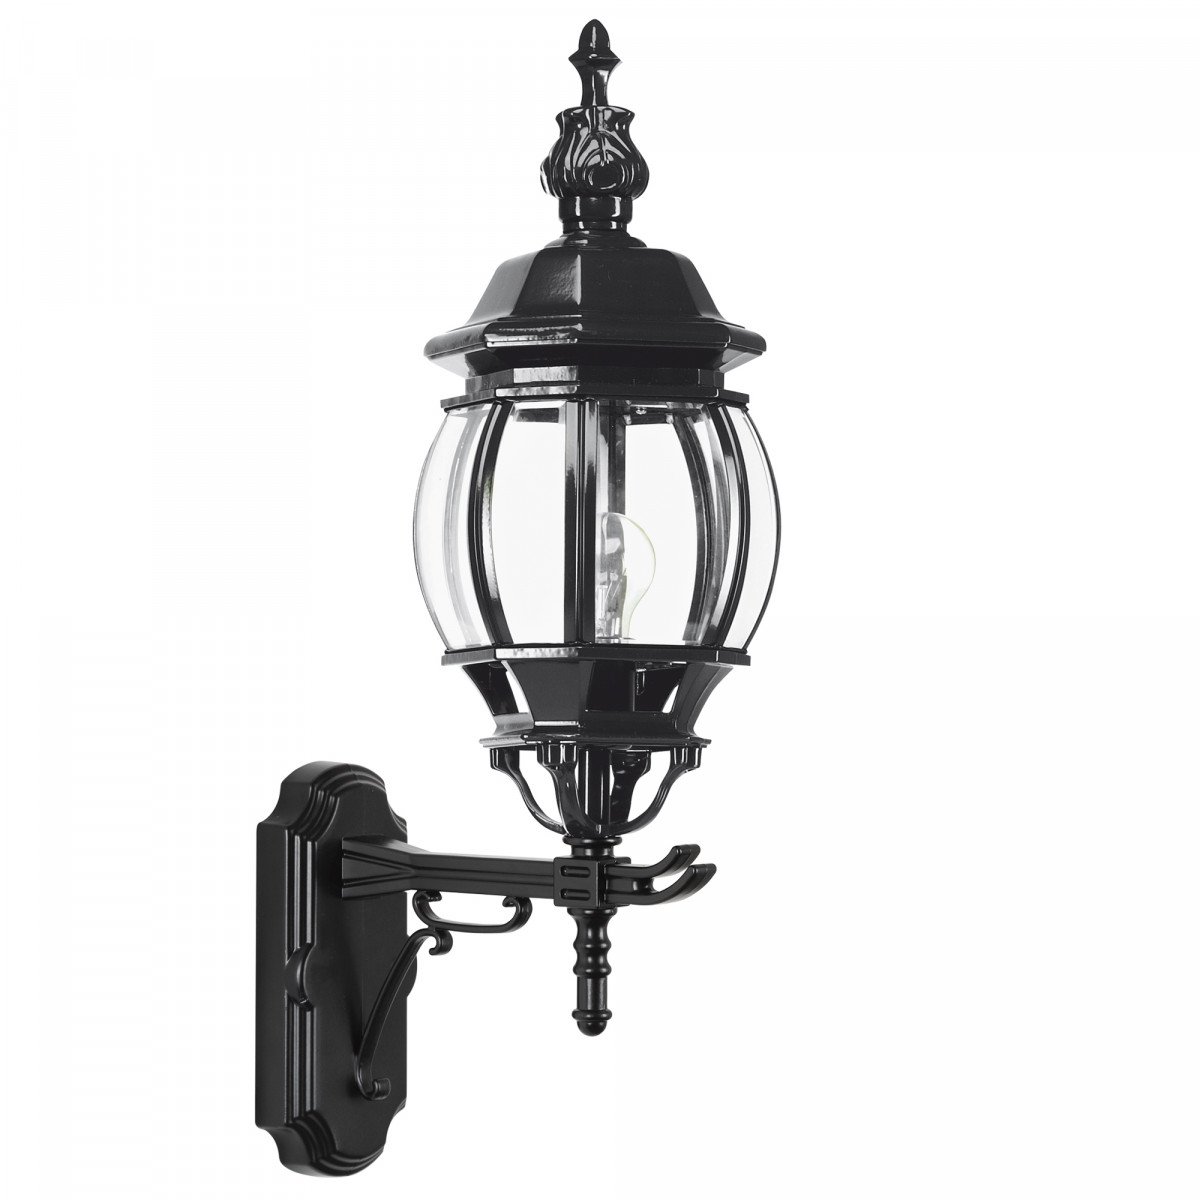 Lampe d'extérieur Palermo éclairage extérieur noir vert ou anthracite dans le style classique campagnard